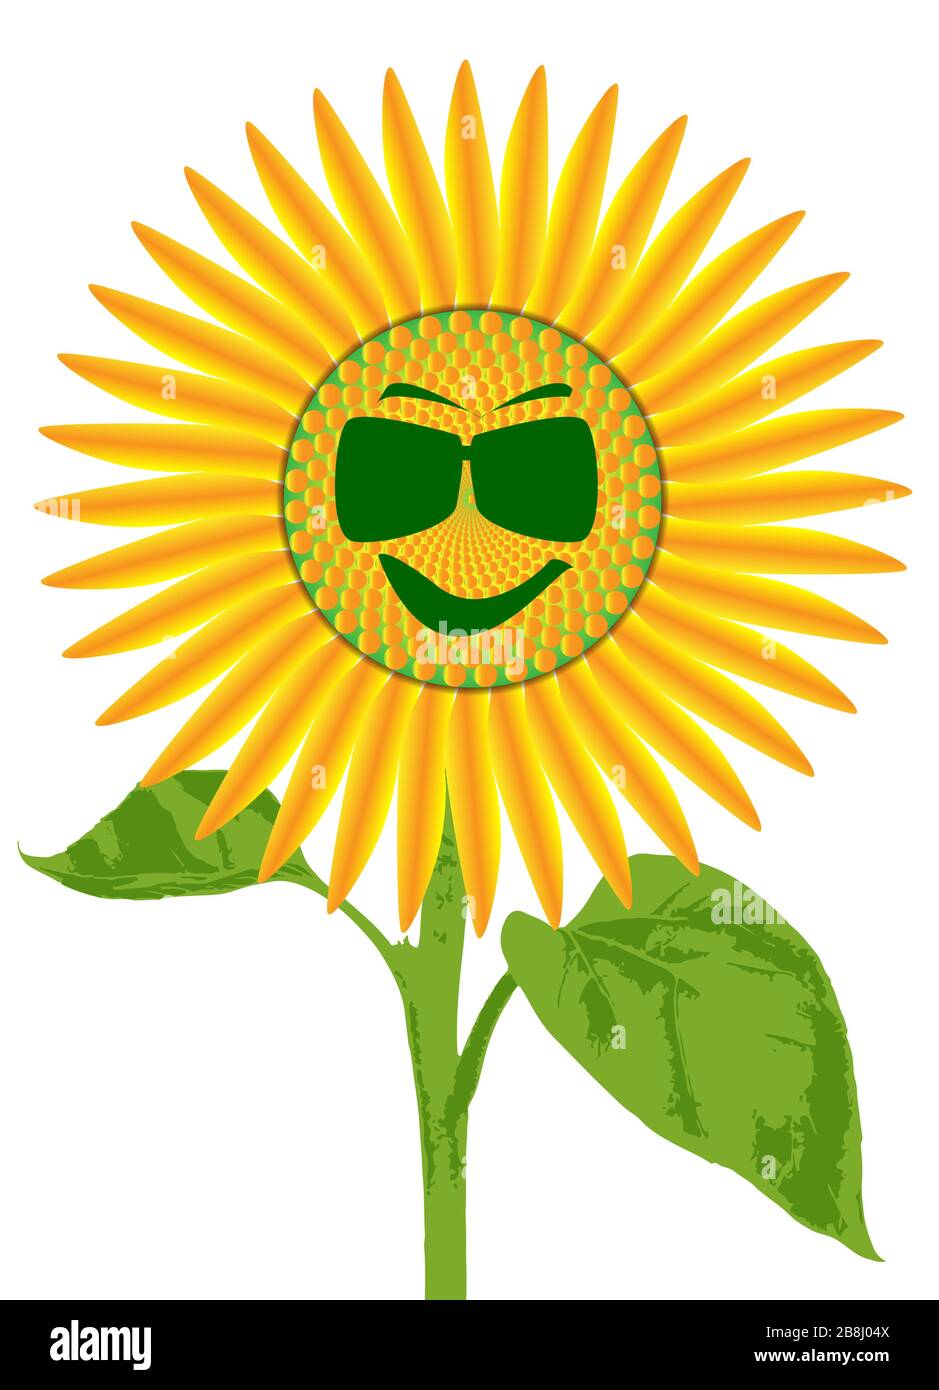 La tête d'une grande plante de tournesol isolée sur un fond blanc avec un visage souriant avec des lunettes de soleil Illustration de Vecteur